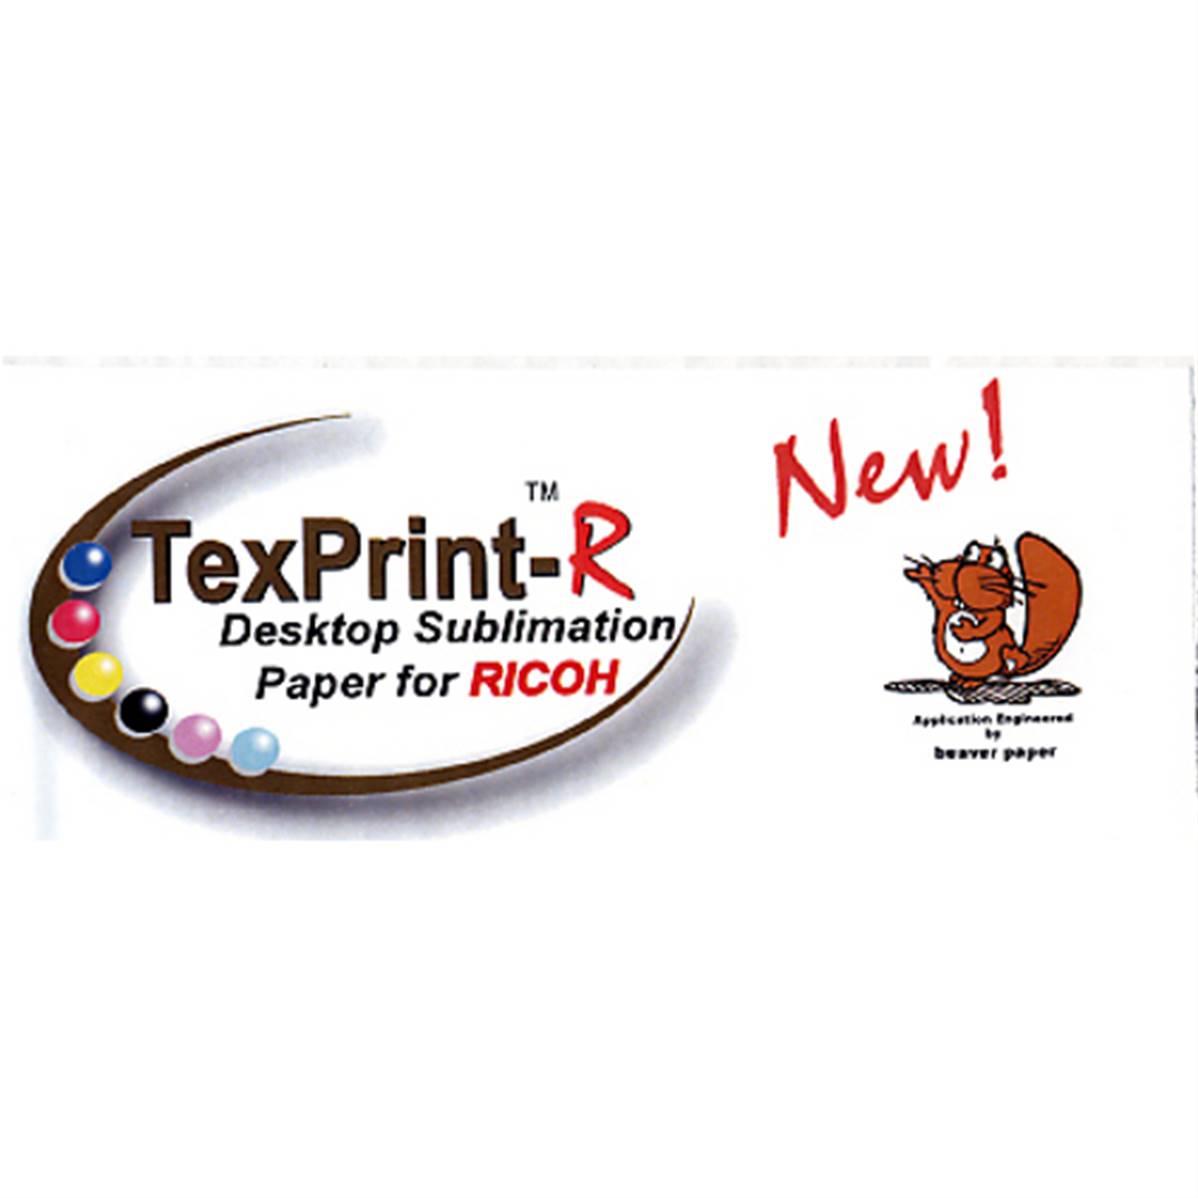 Papier sublimation TexPrint, 120 g/m²[Prix